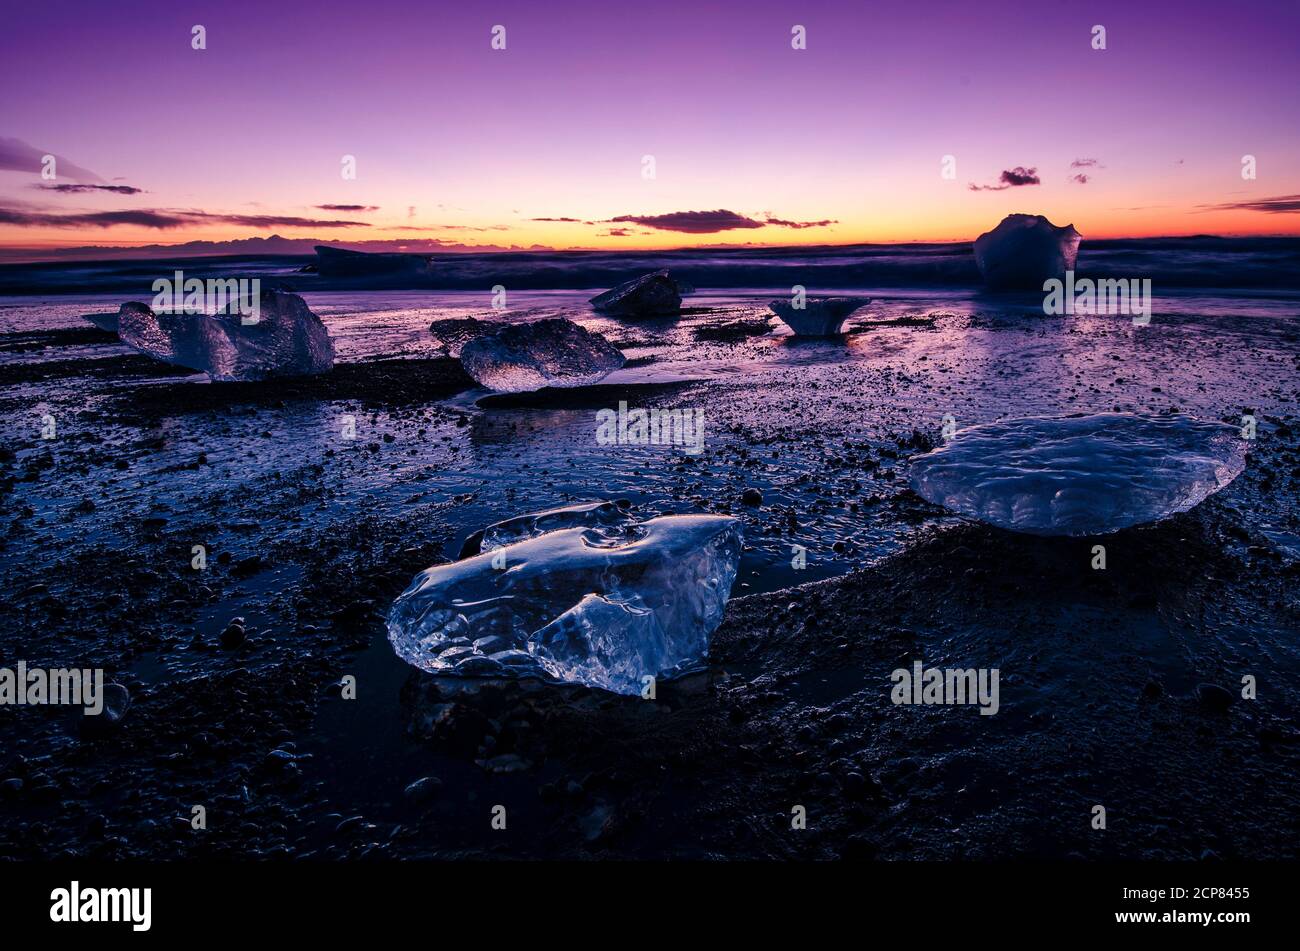 Sonnenaufgang über dem Meer in Island, am Diamond schwarzen Sandstrand mit Licht, das die Eisberge am Strand trifft. Stockfoto